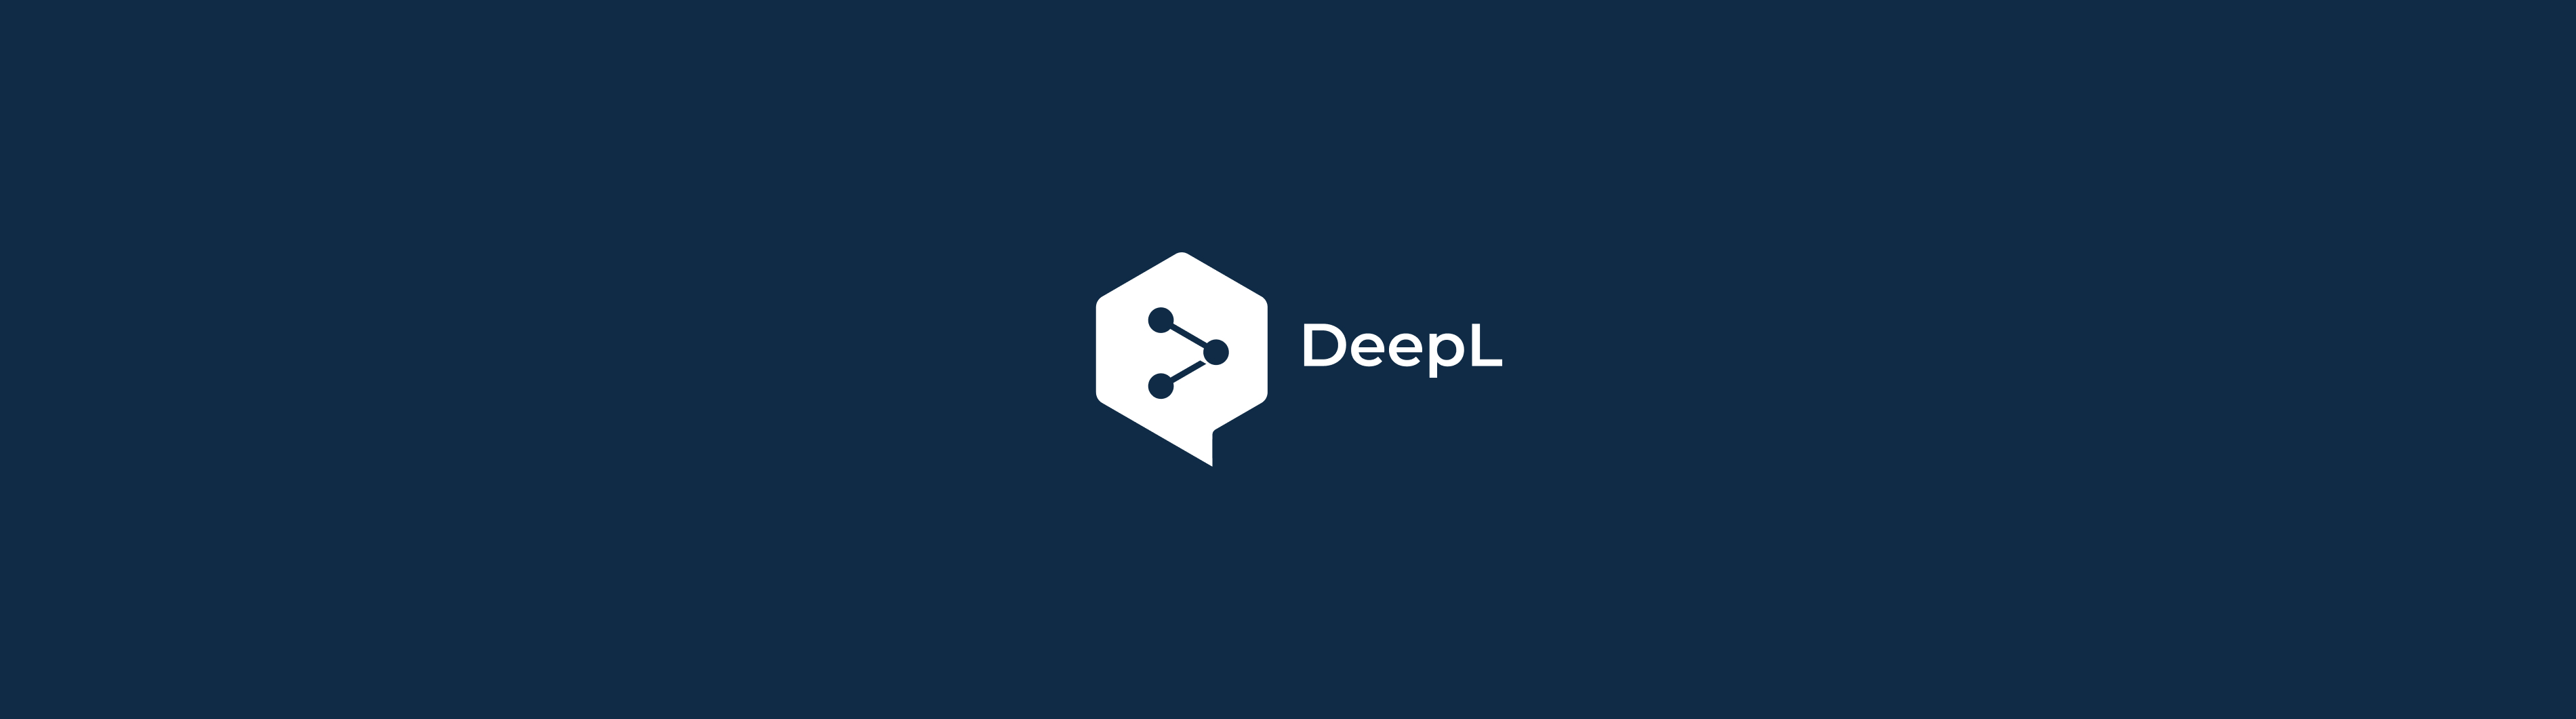 DeepL Blog Header